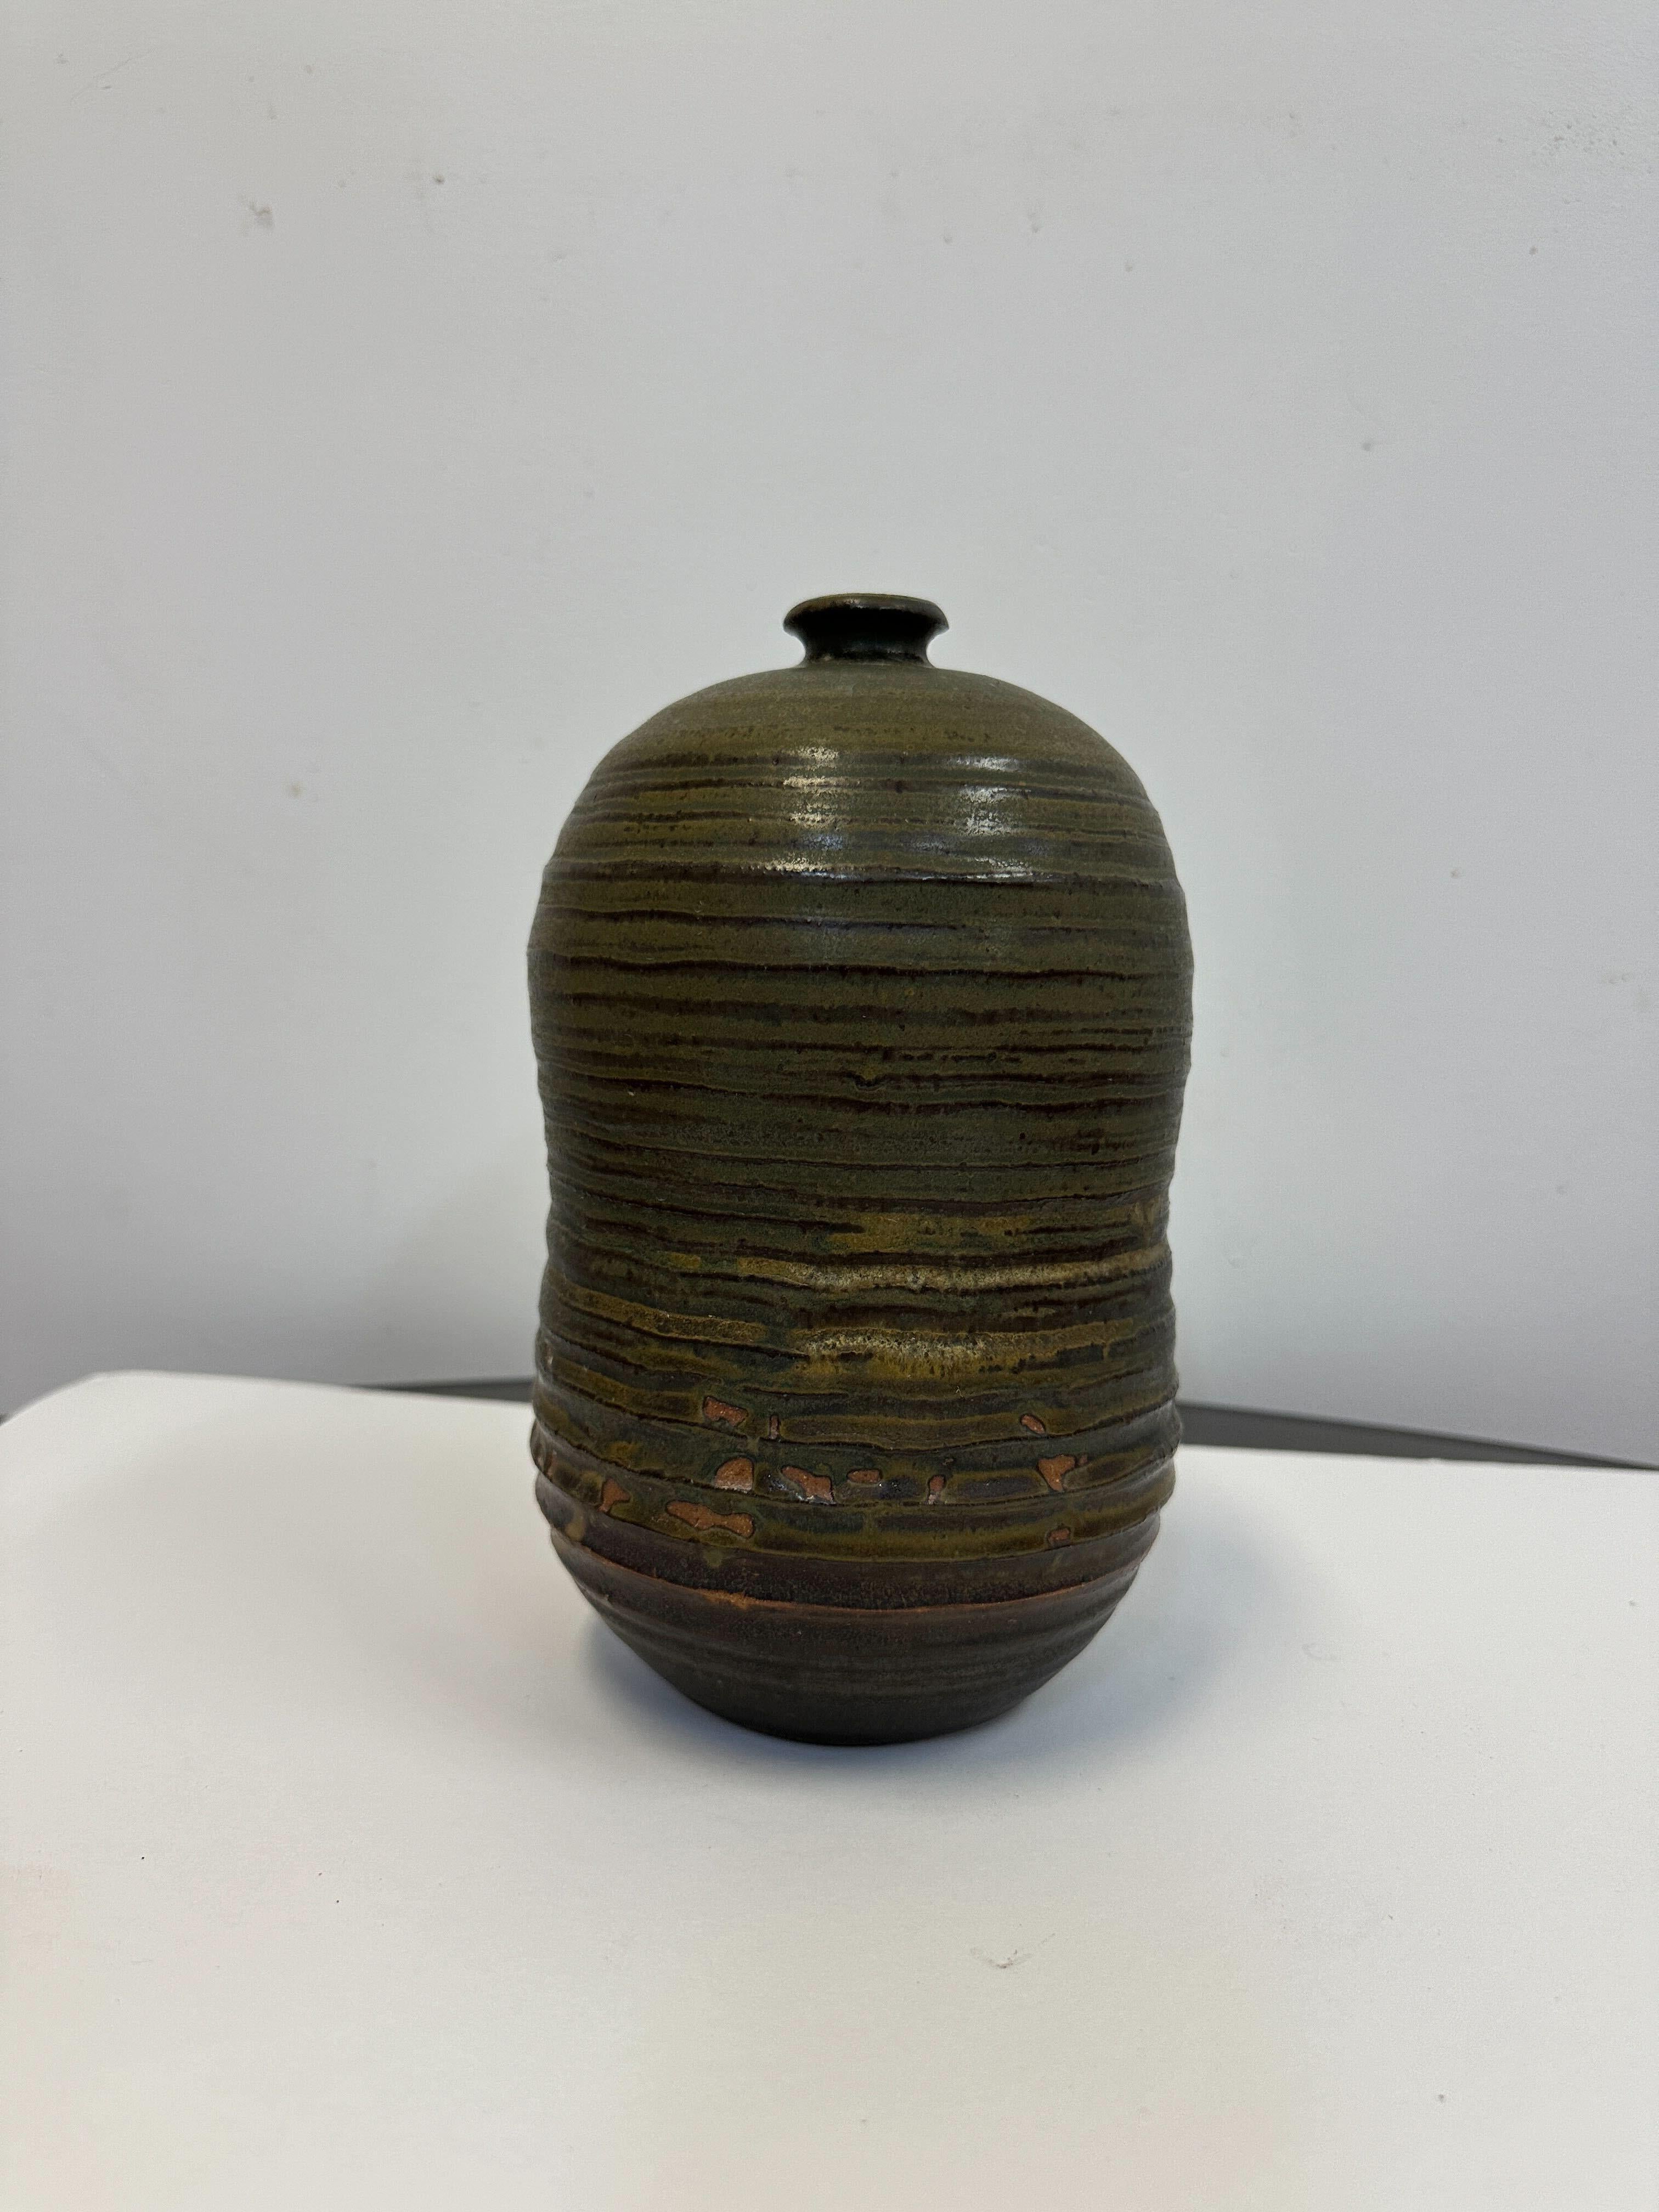 Dieses schöne Steingutgefäß ist insgesamt in sehr gutem Zustand. Ähnlich dem Stil der Toshiko Takaezu-Keramik. Maße: 9,5